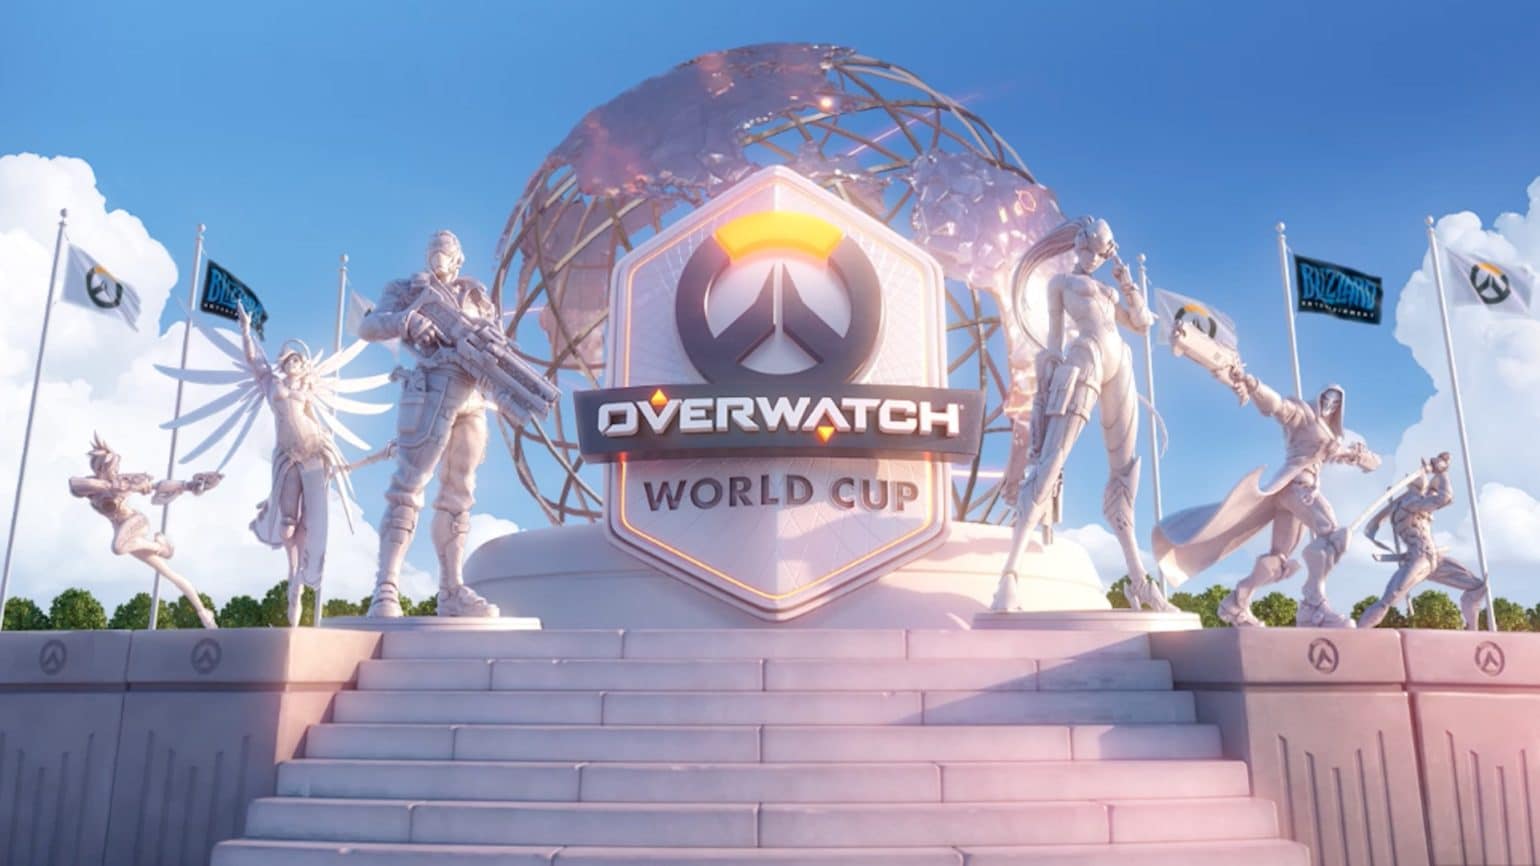 Overwatch revient avec une nouvelle édition de sa coupe du monde